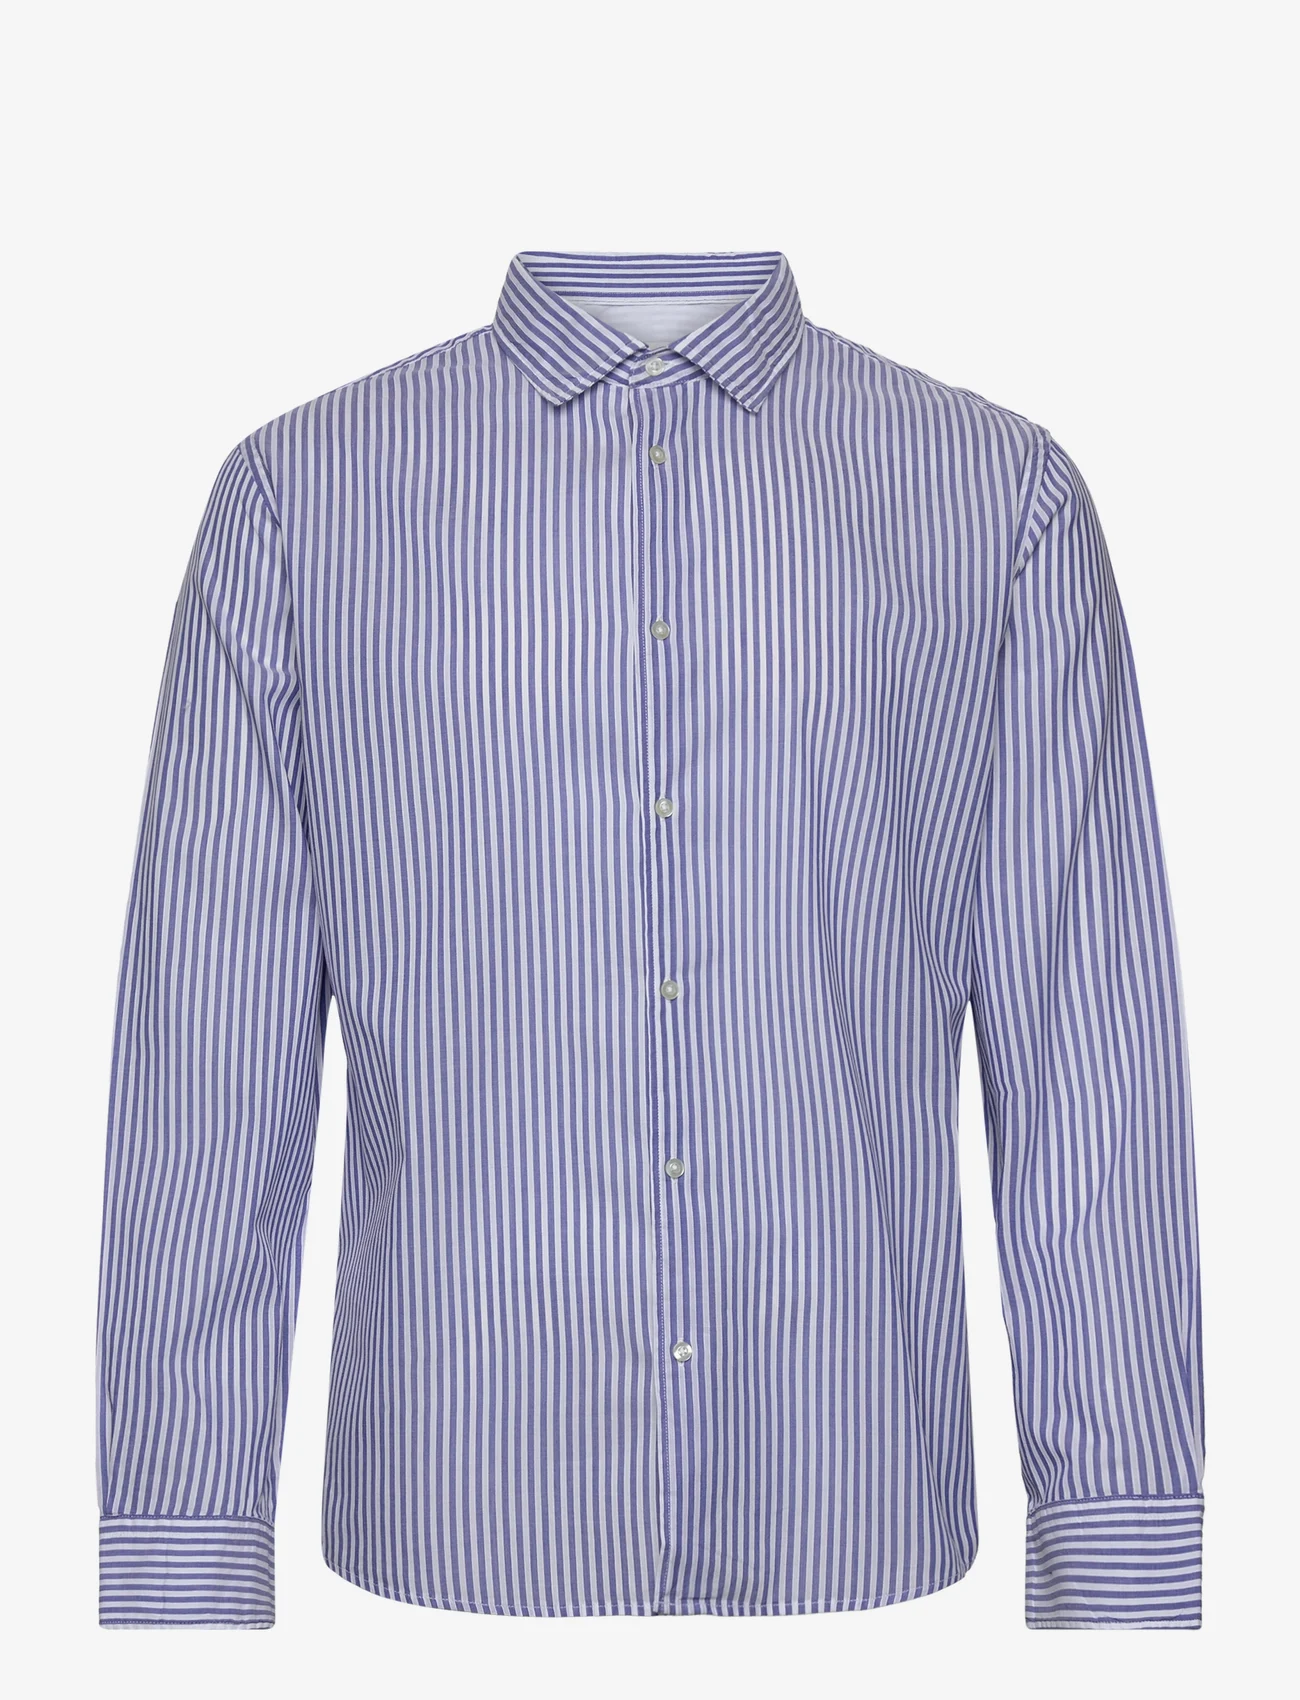 Mango - 100% cotton slim fit shirt - muodolliset kauluspaidat - navy - 0